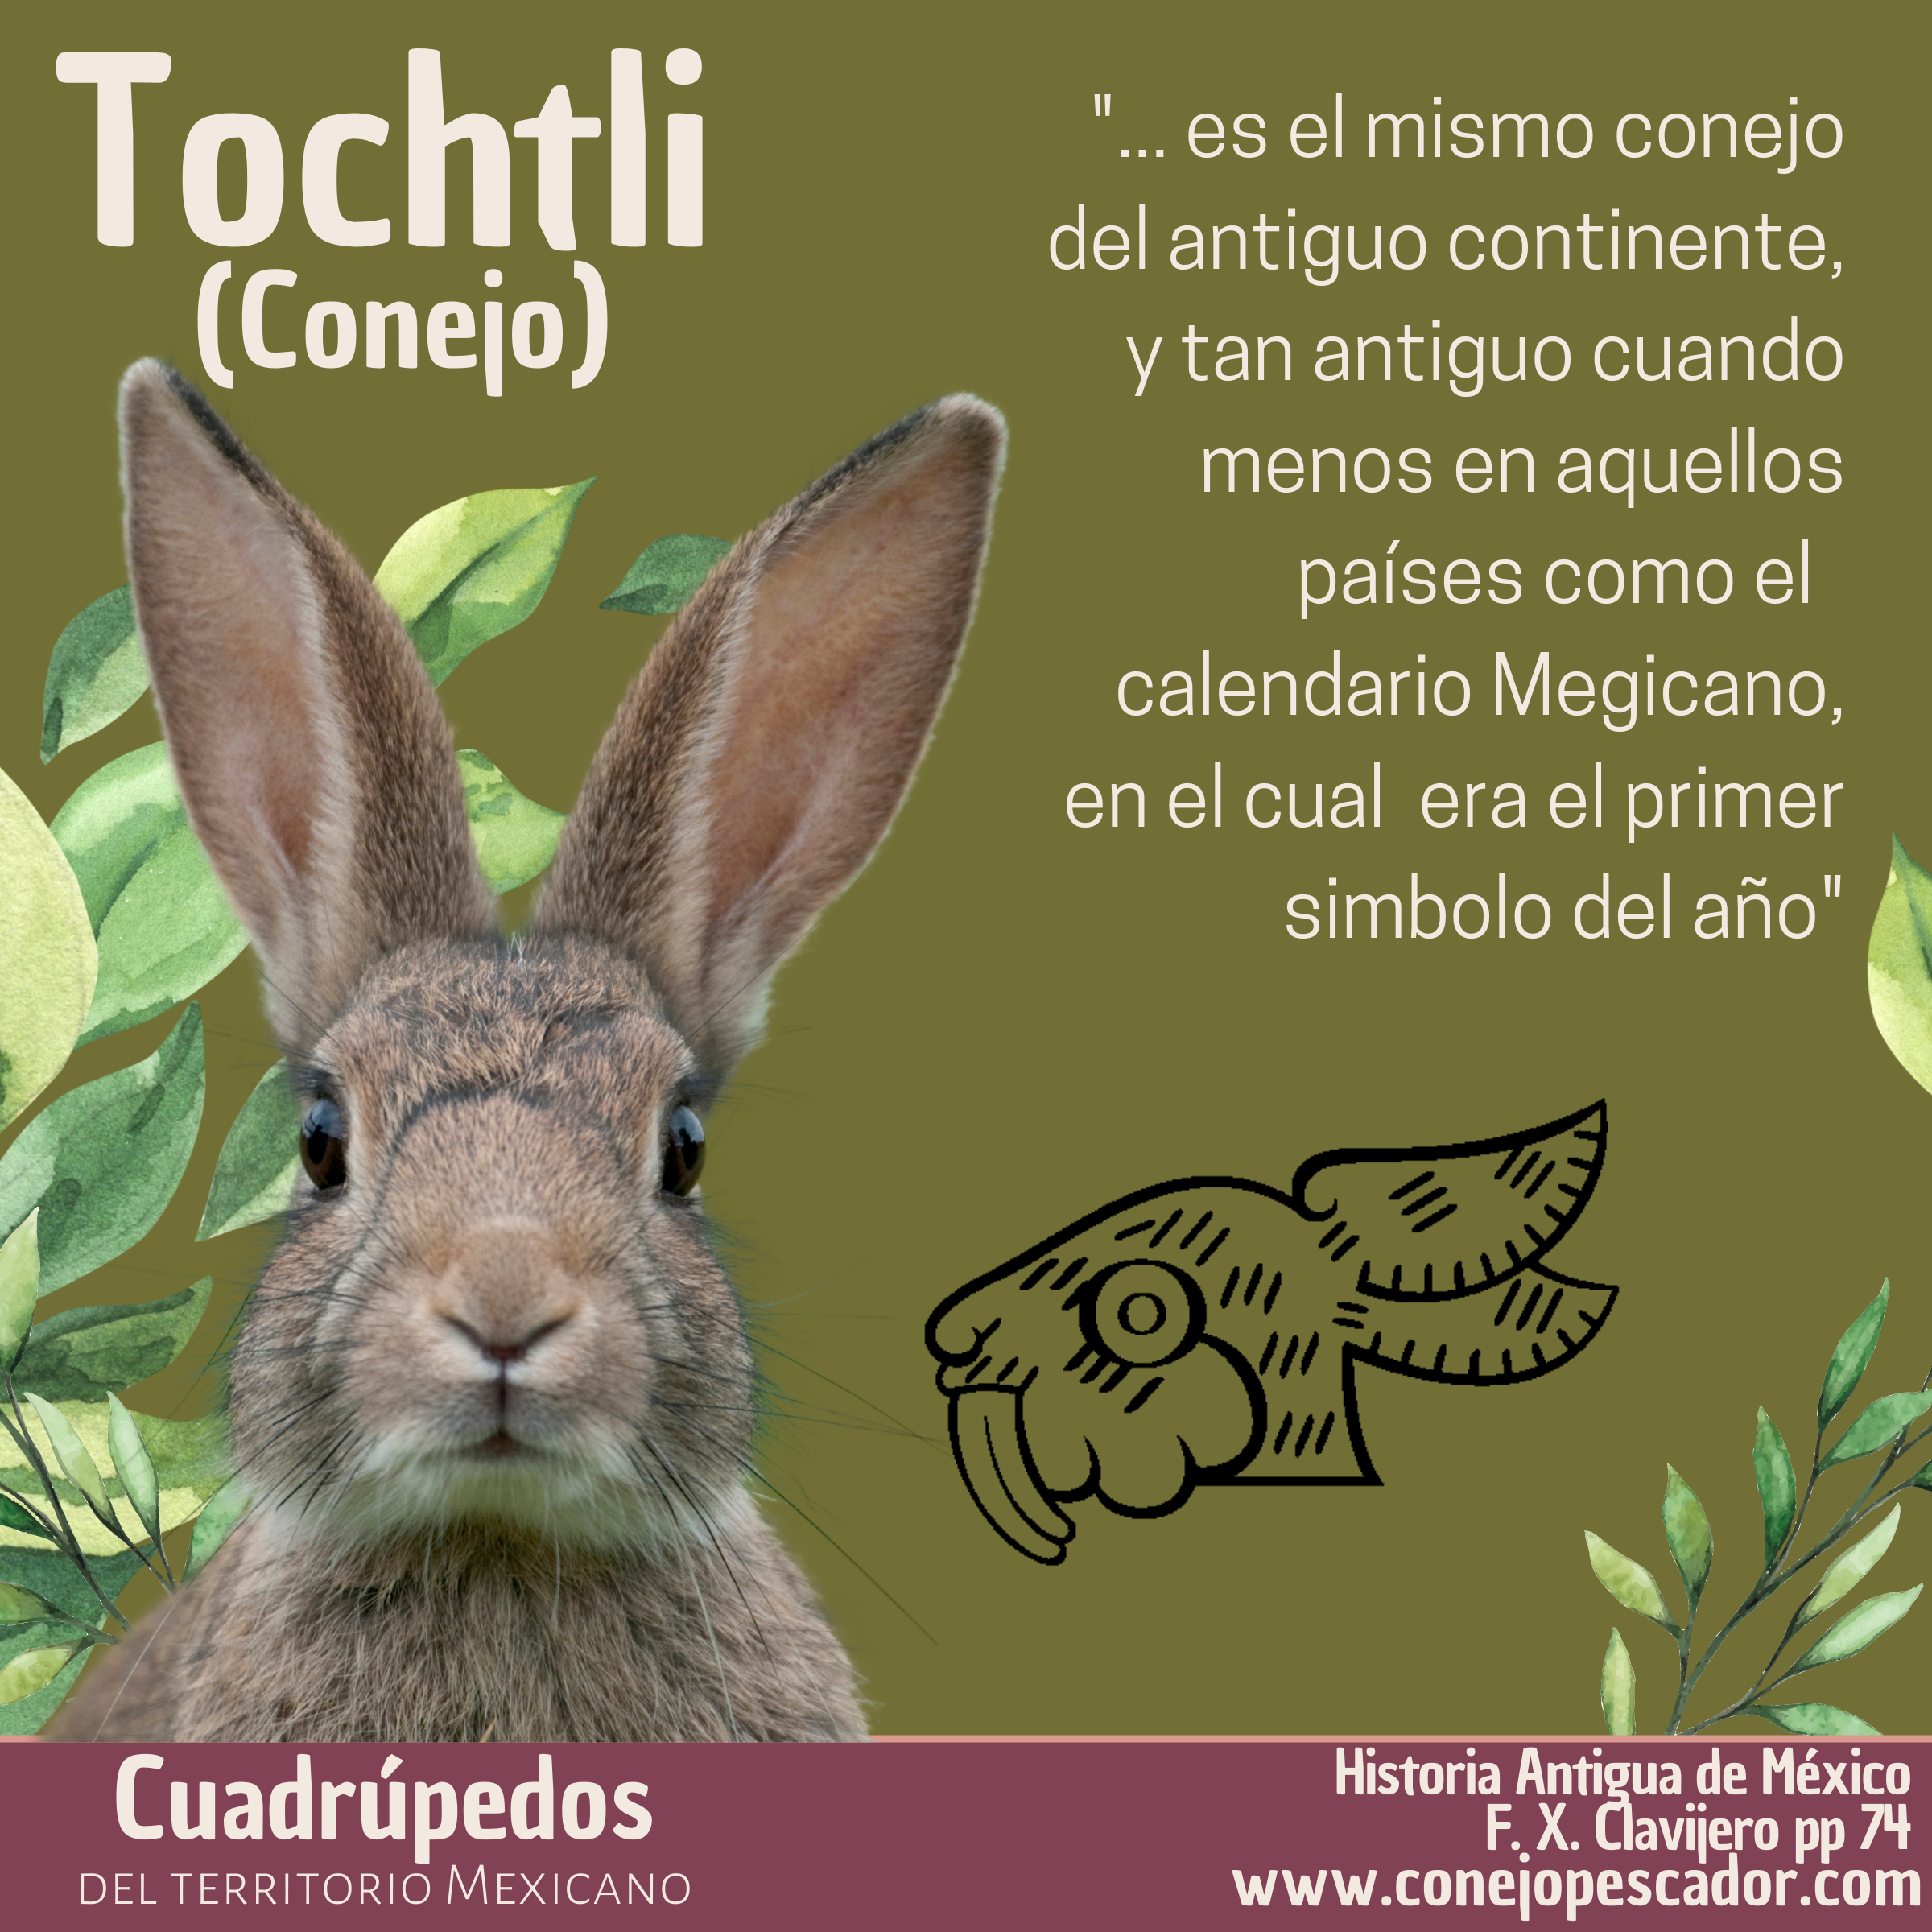 Imagen de un Tochtli o Conejo, acompañado de una cita del libro 'Historia antigua de México' de Francisco Xavier Clavijero. Texto de la cita: 'es el mismo conejo del antiguo continente'.